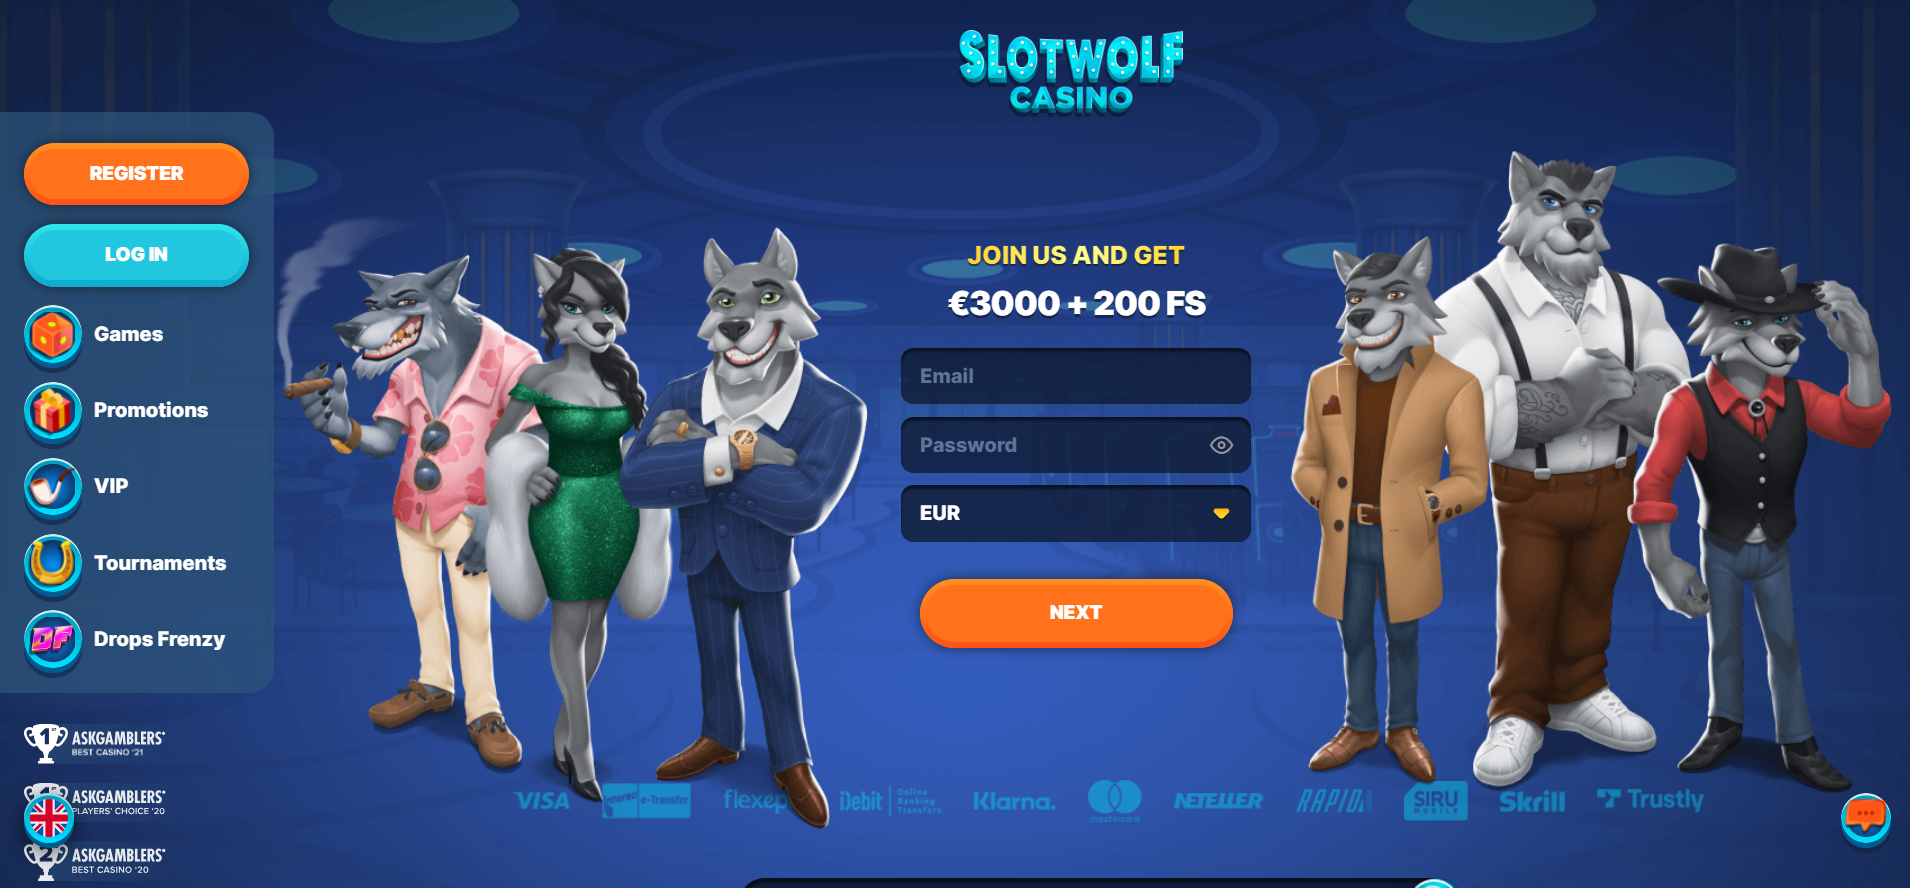 Slot Wolf Casino Lobby